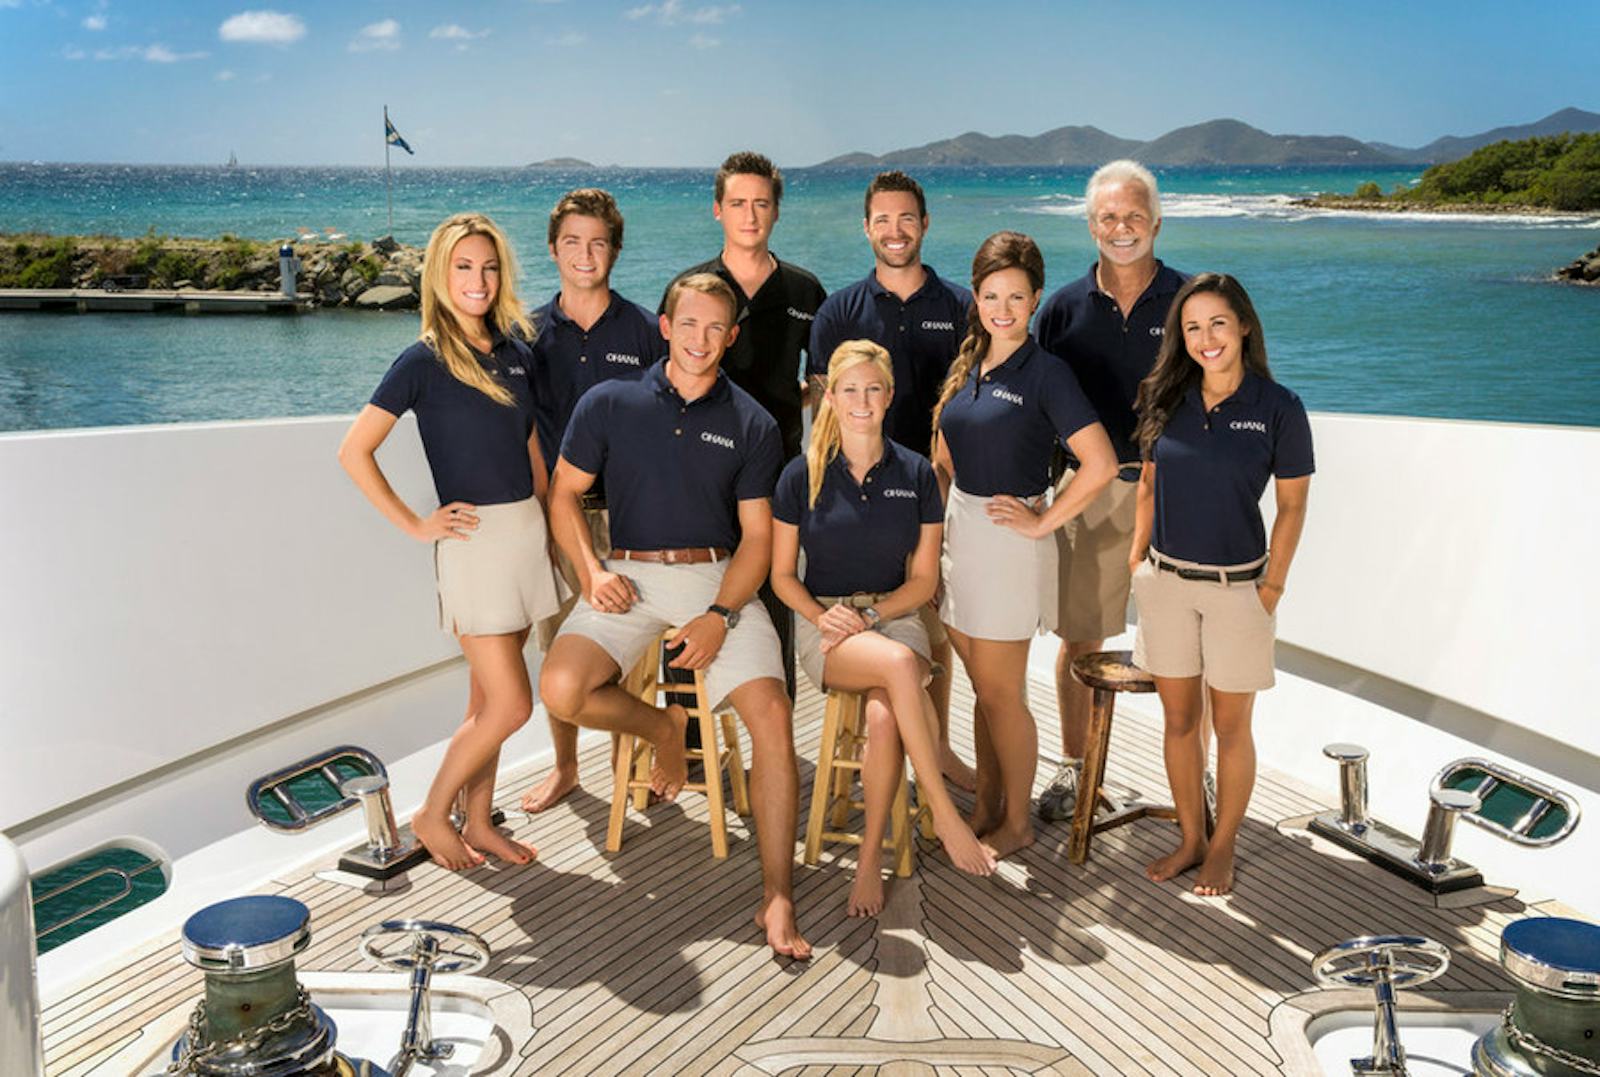 yacht crew salary below deck